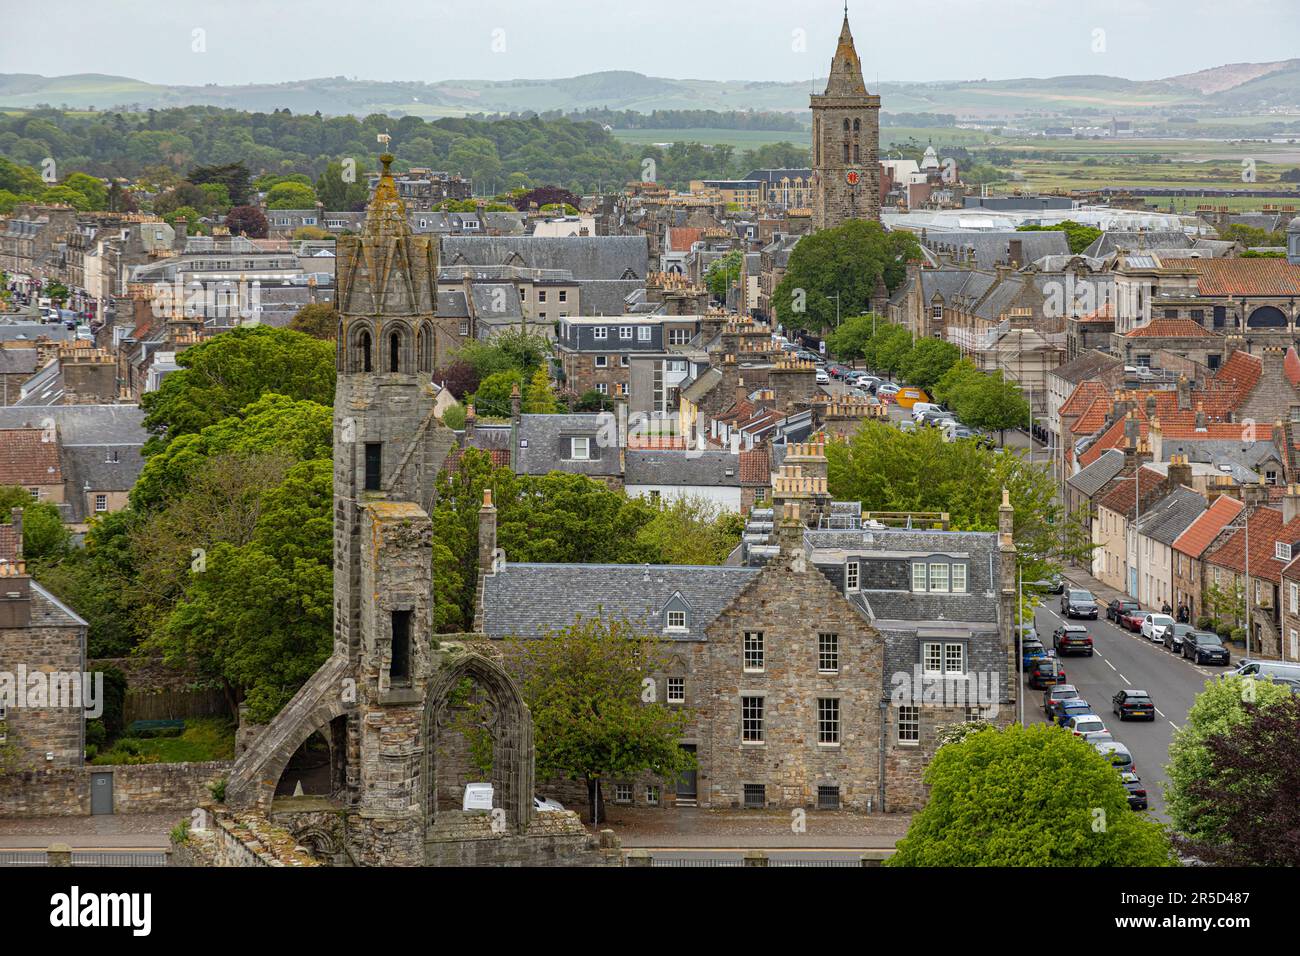 Erhöhte Aussicht auf einen Teil der Stadt St. Andrews, Fife Scotland, einschließlich eines Teils der Ruine der mittelalterlichen Kathedrale und der North Street, die in Richtung T führt Stockfoto